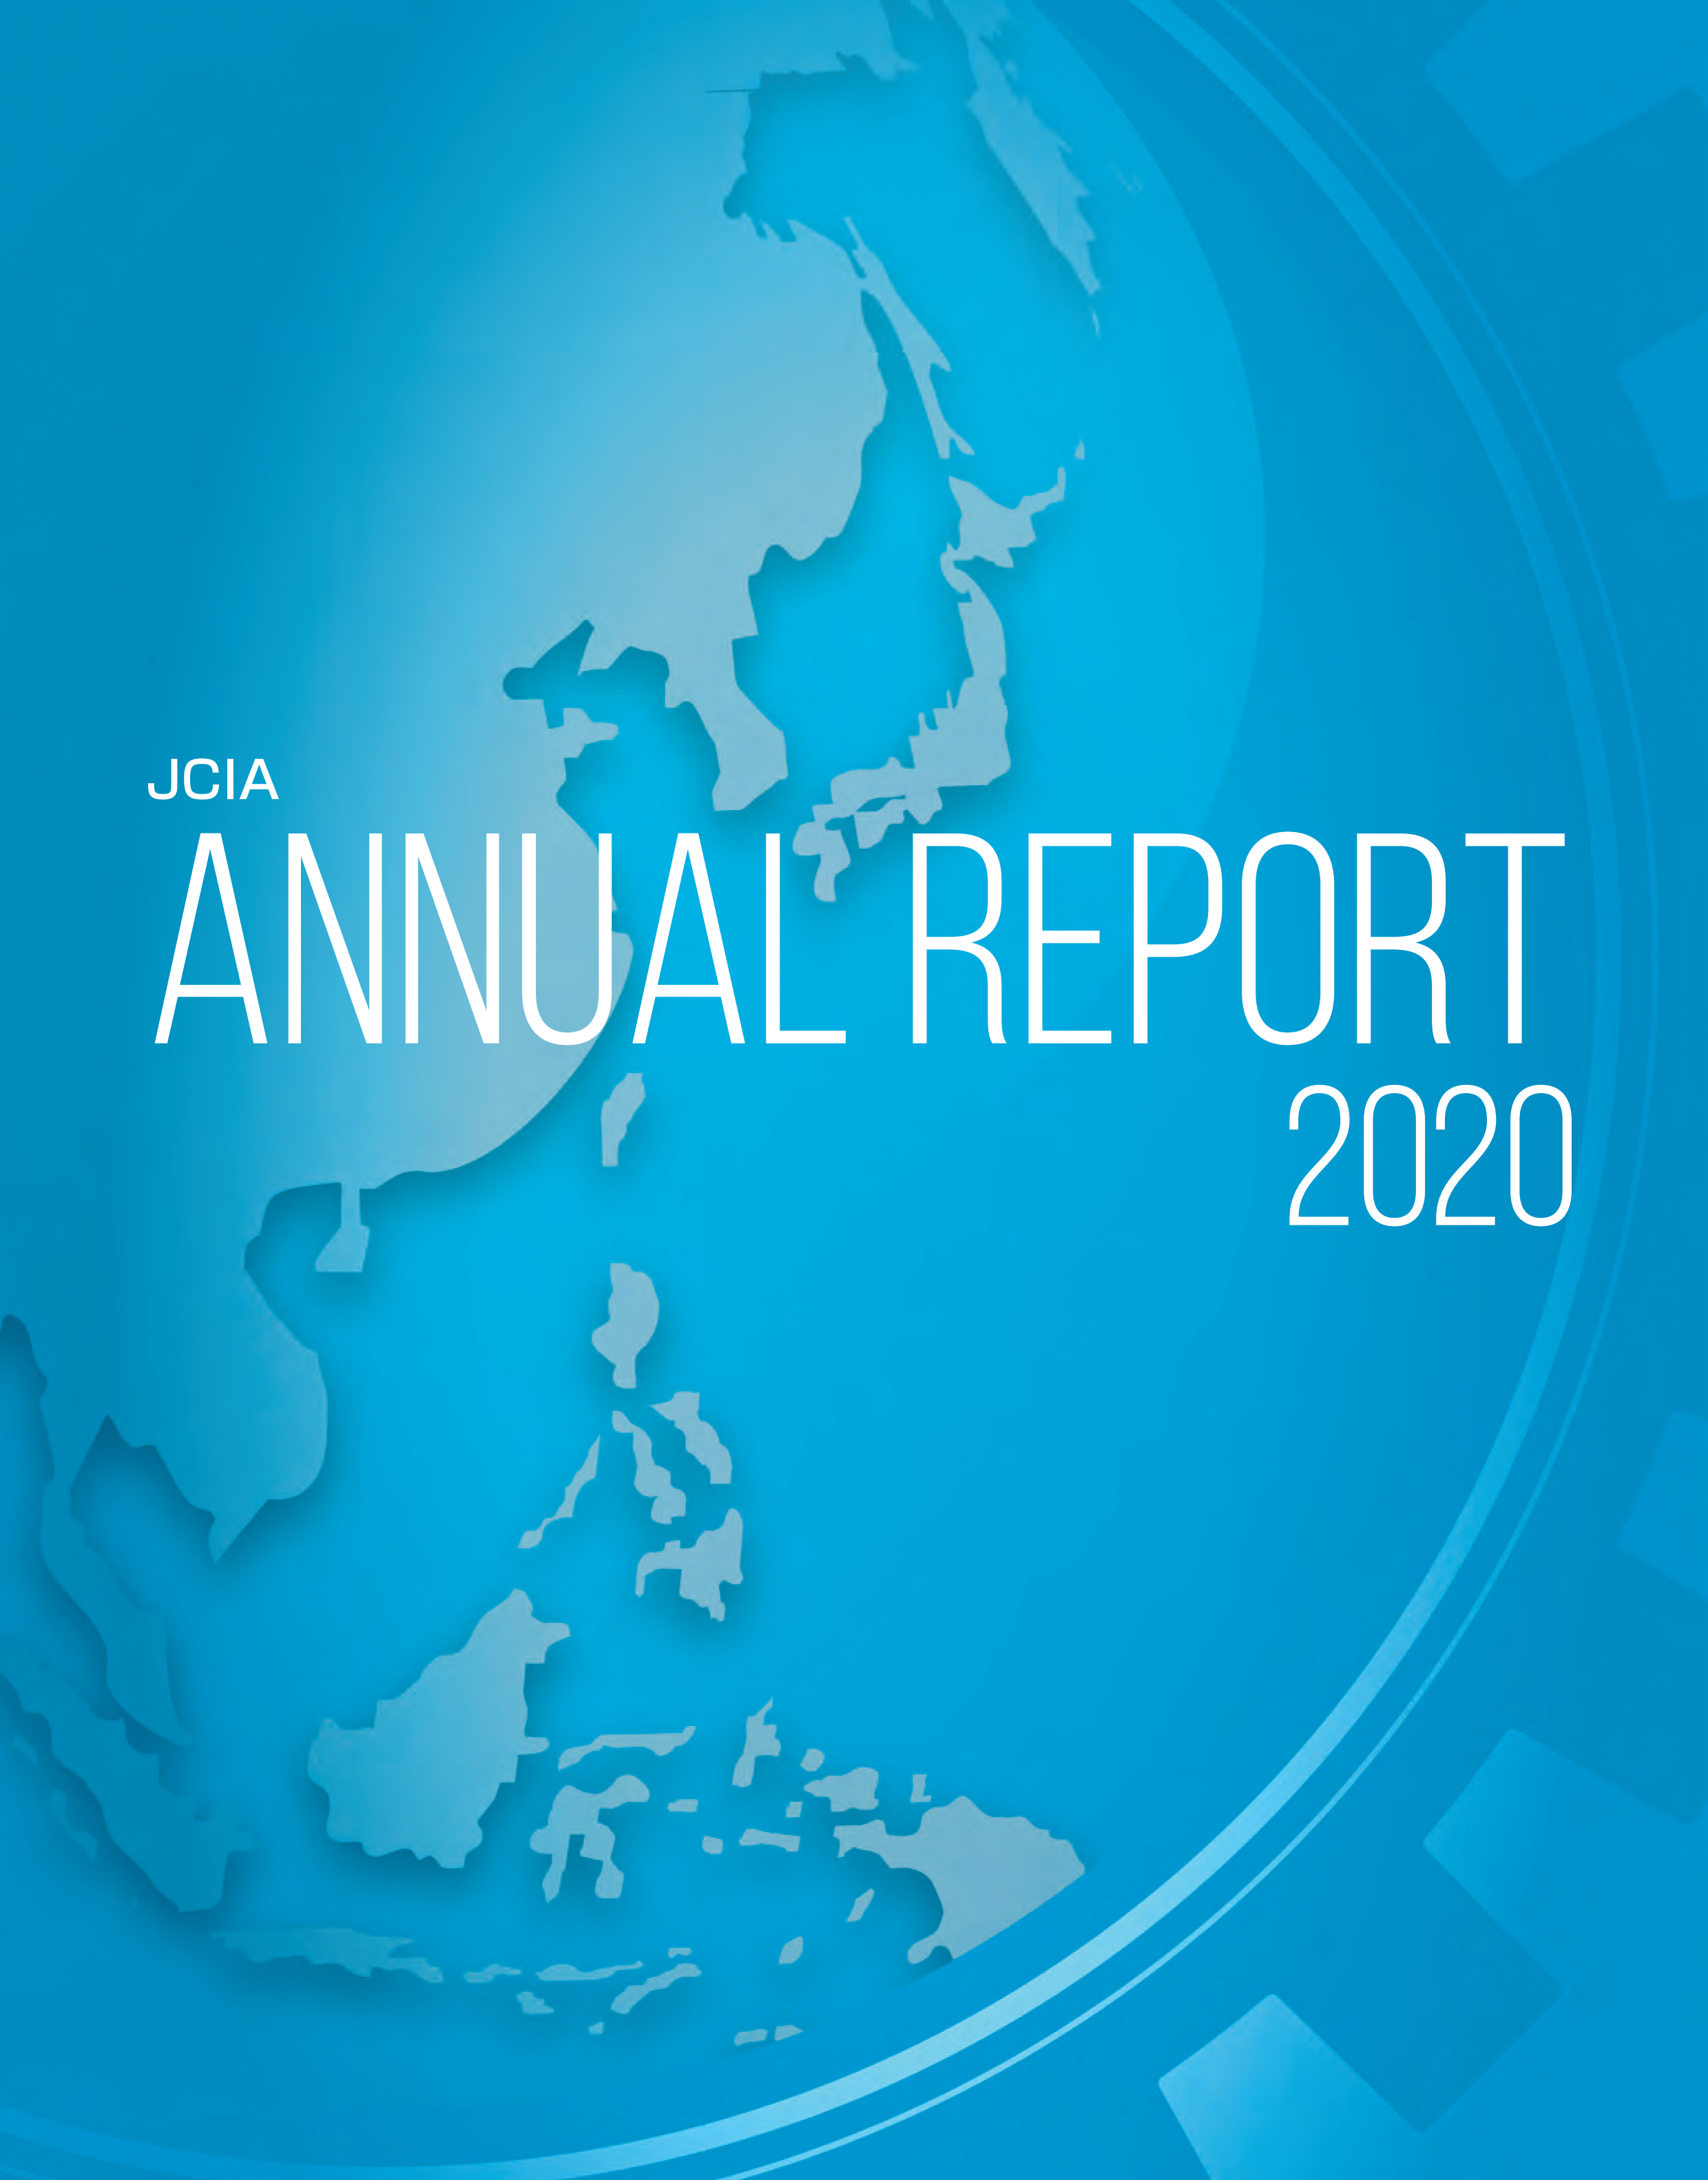 JCIA Annual Report 2020